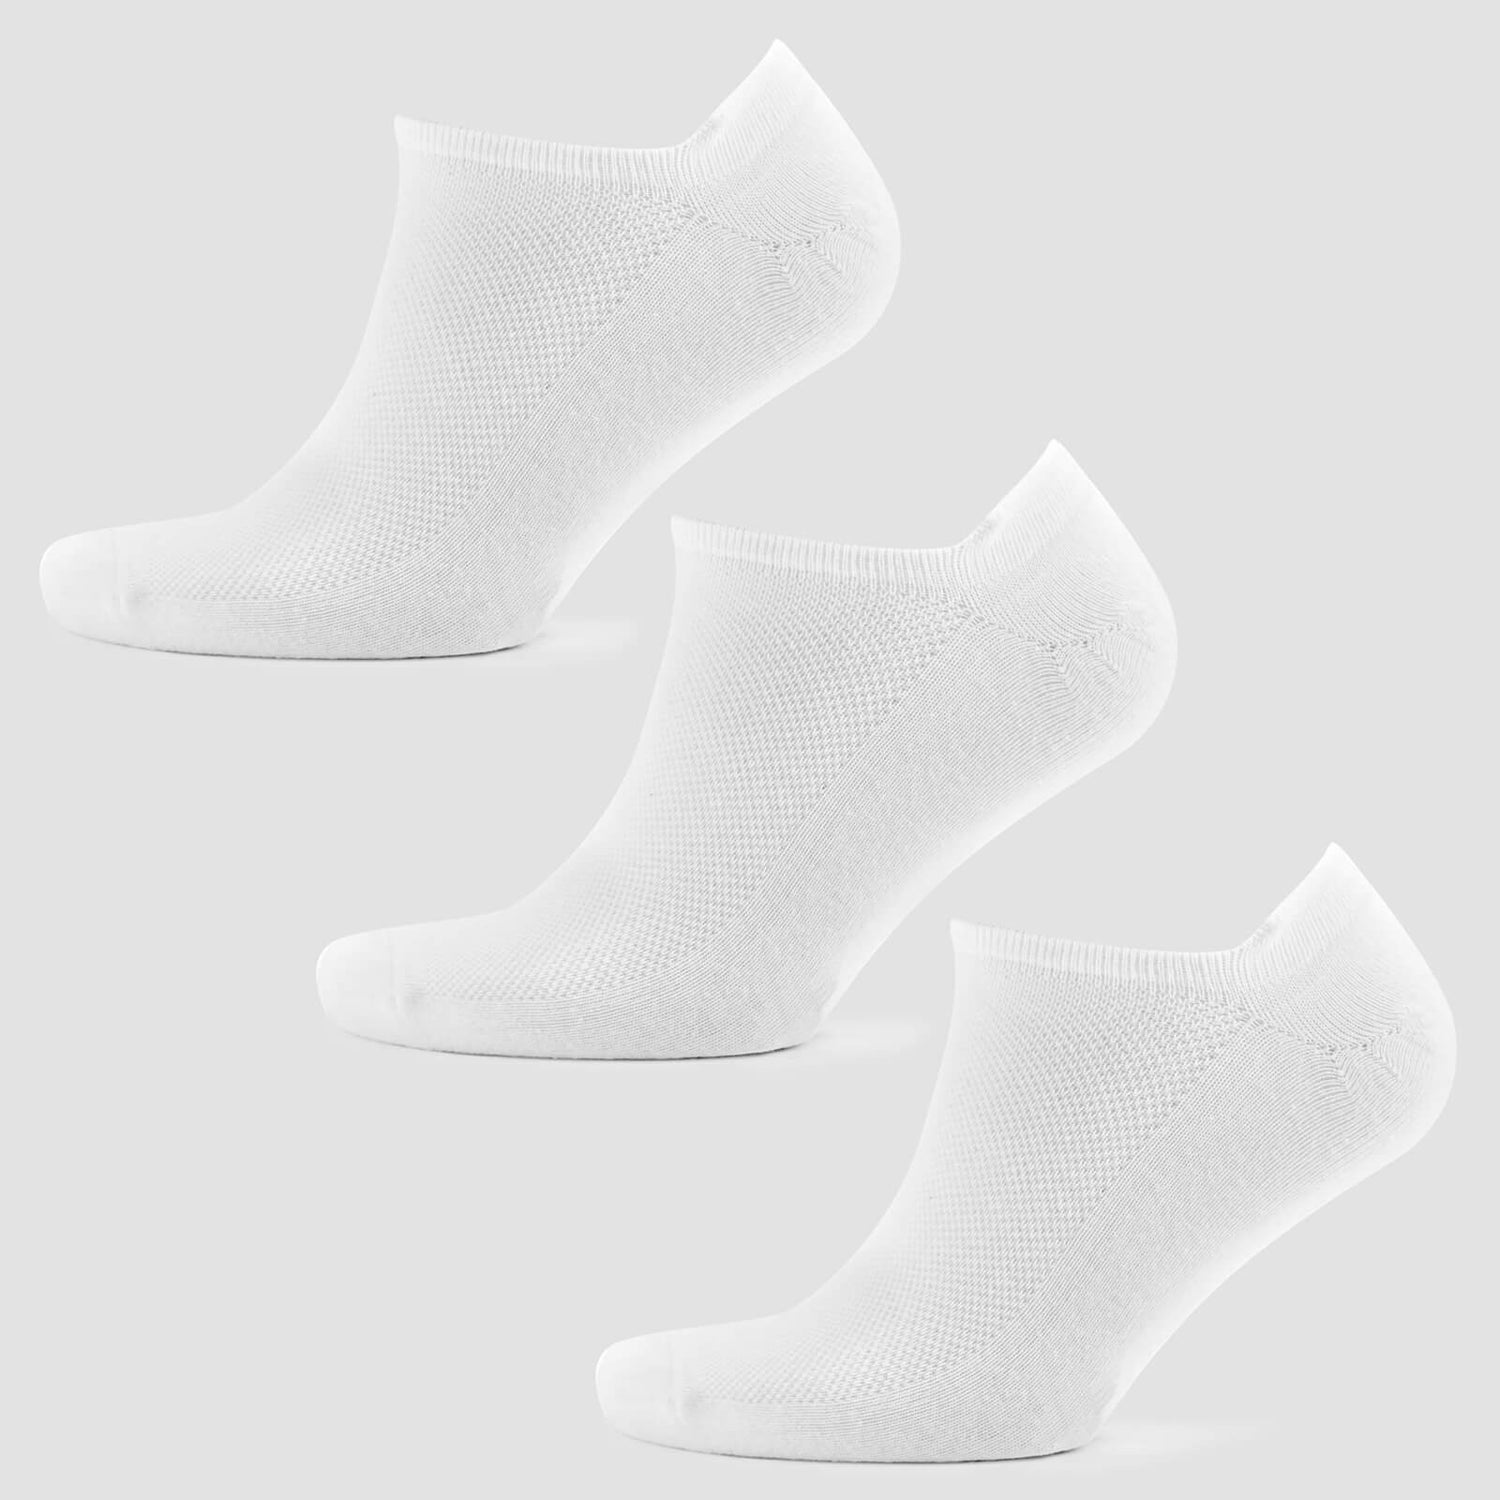 Men's Ankle Socks - White (3 Pack)